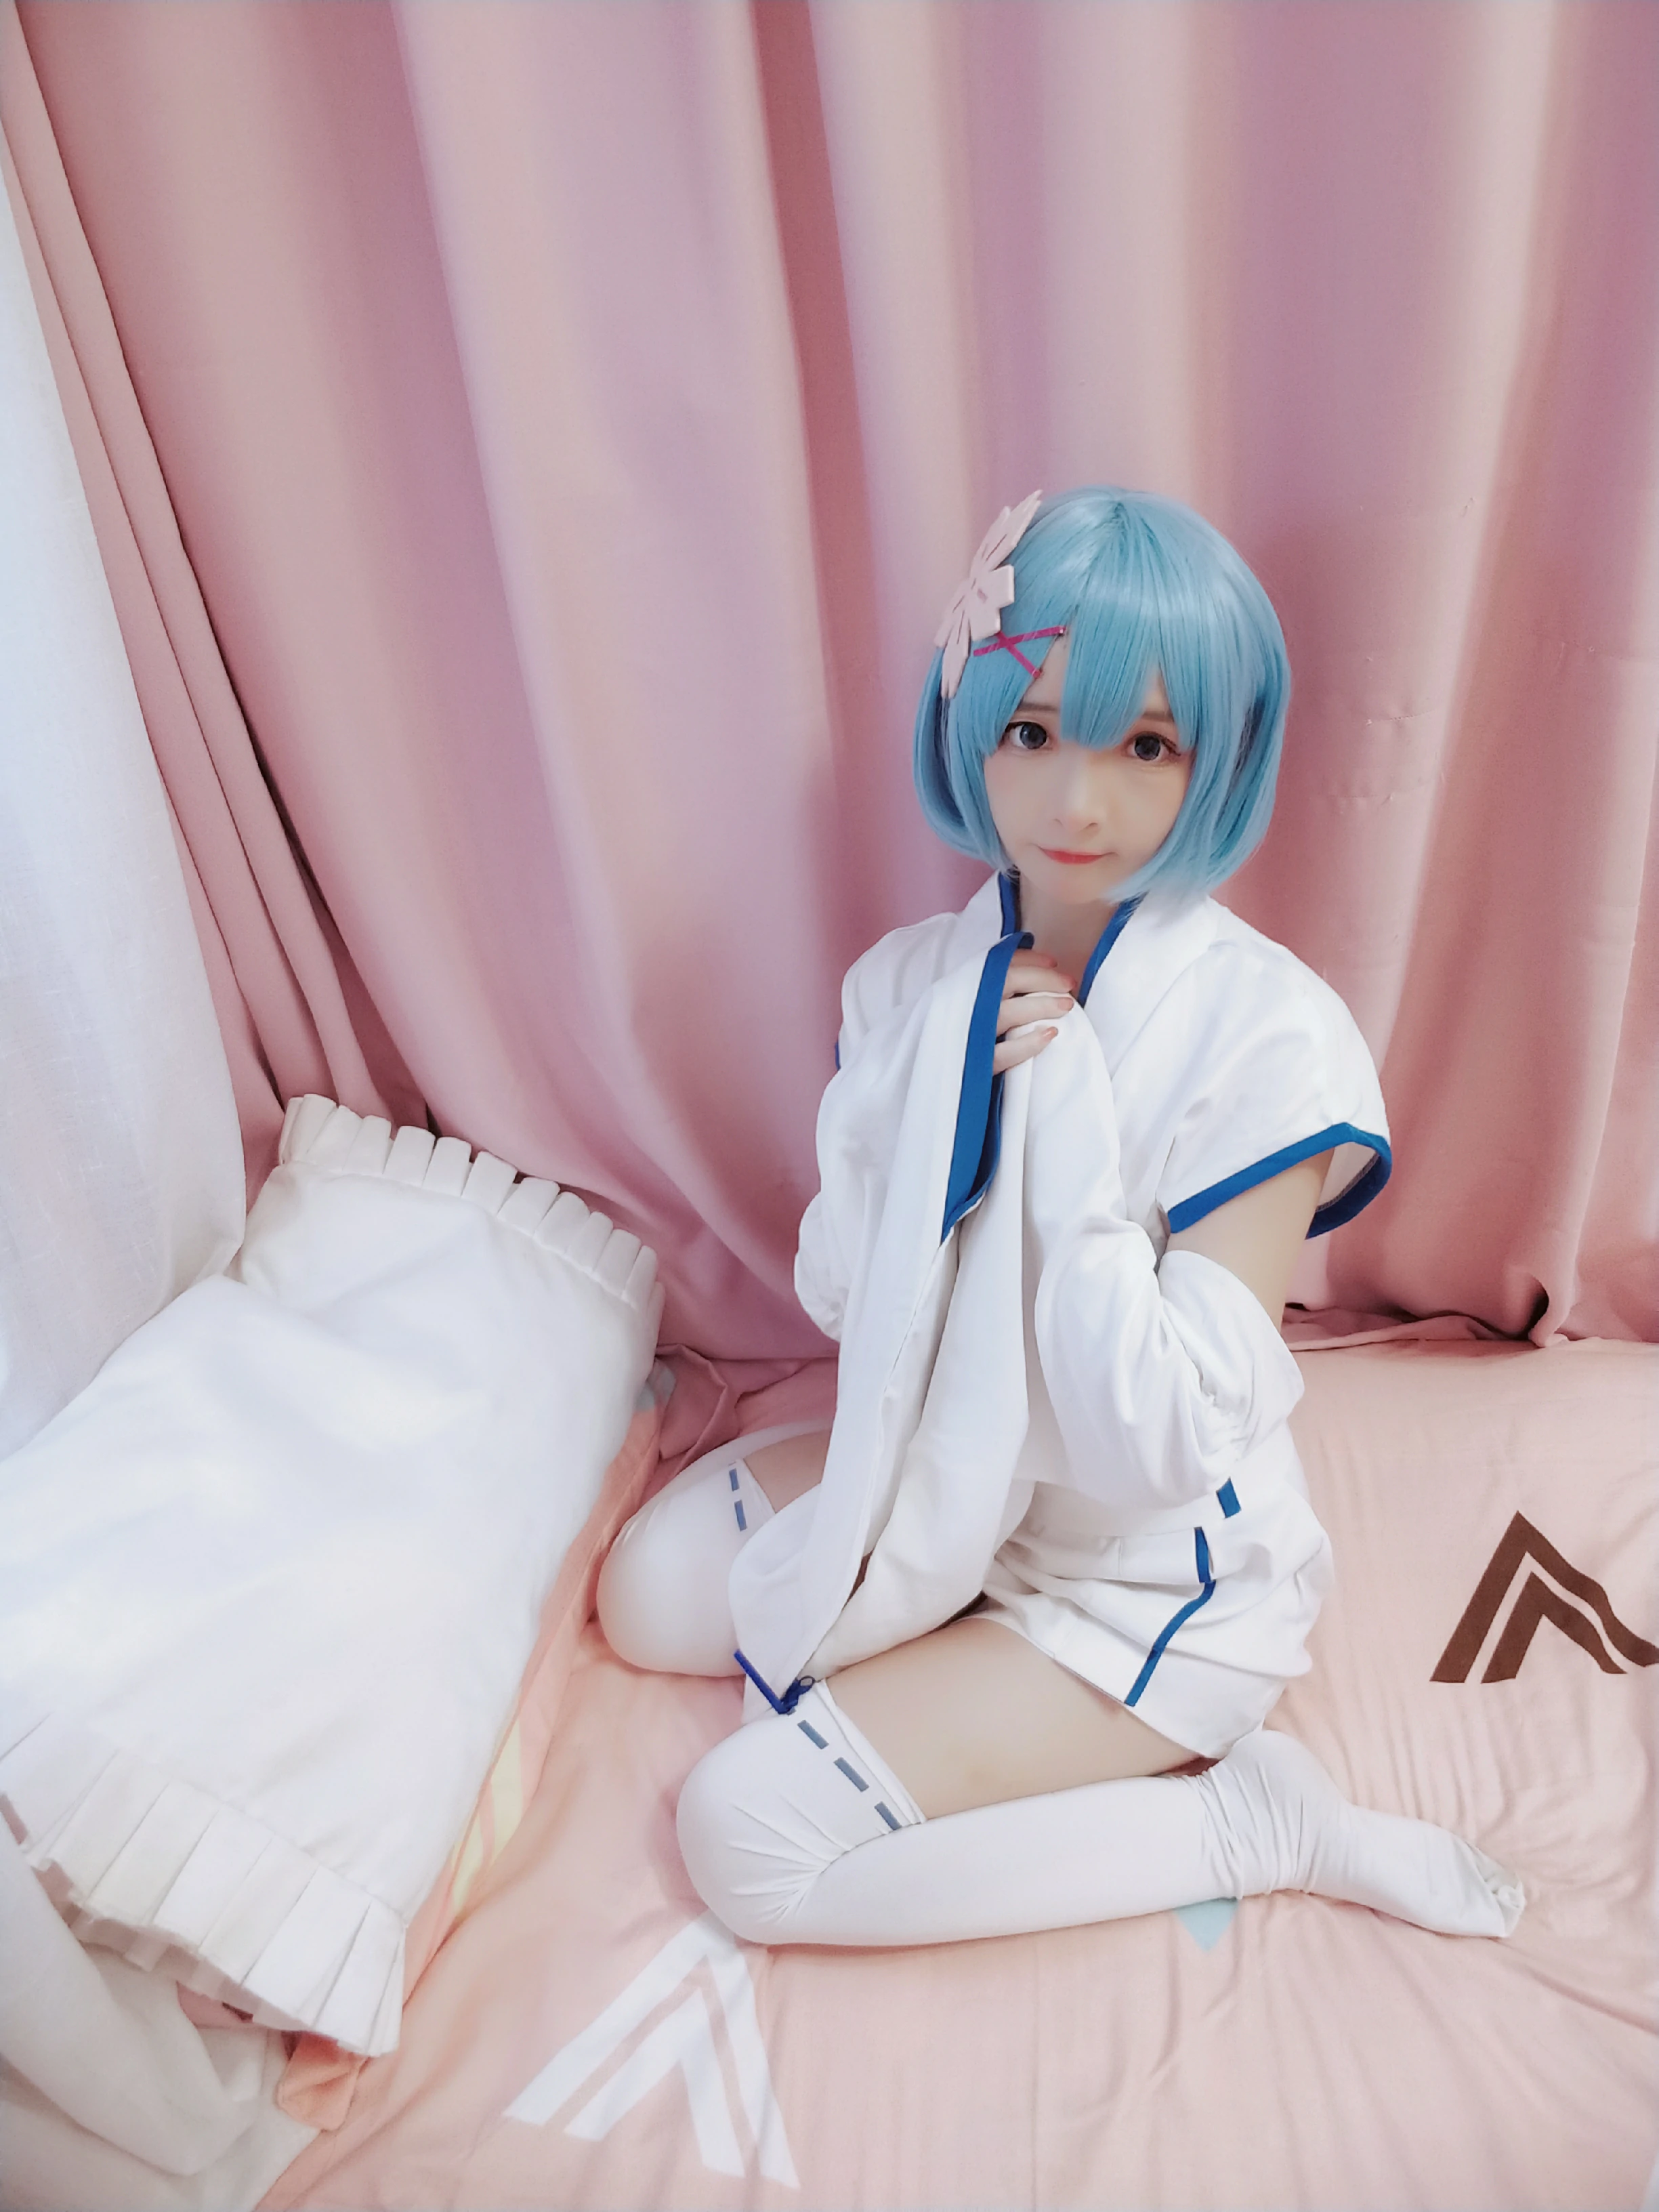 网红清纯少女 古川kagura 蓝色睡衣与白色和服加丝袜美腿私房写真,